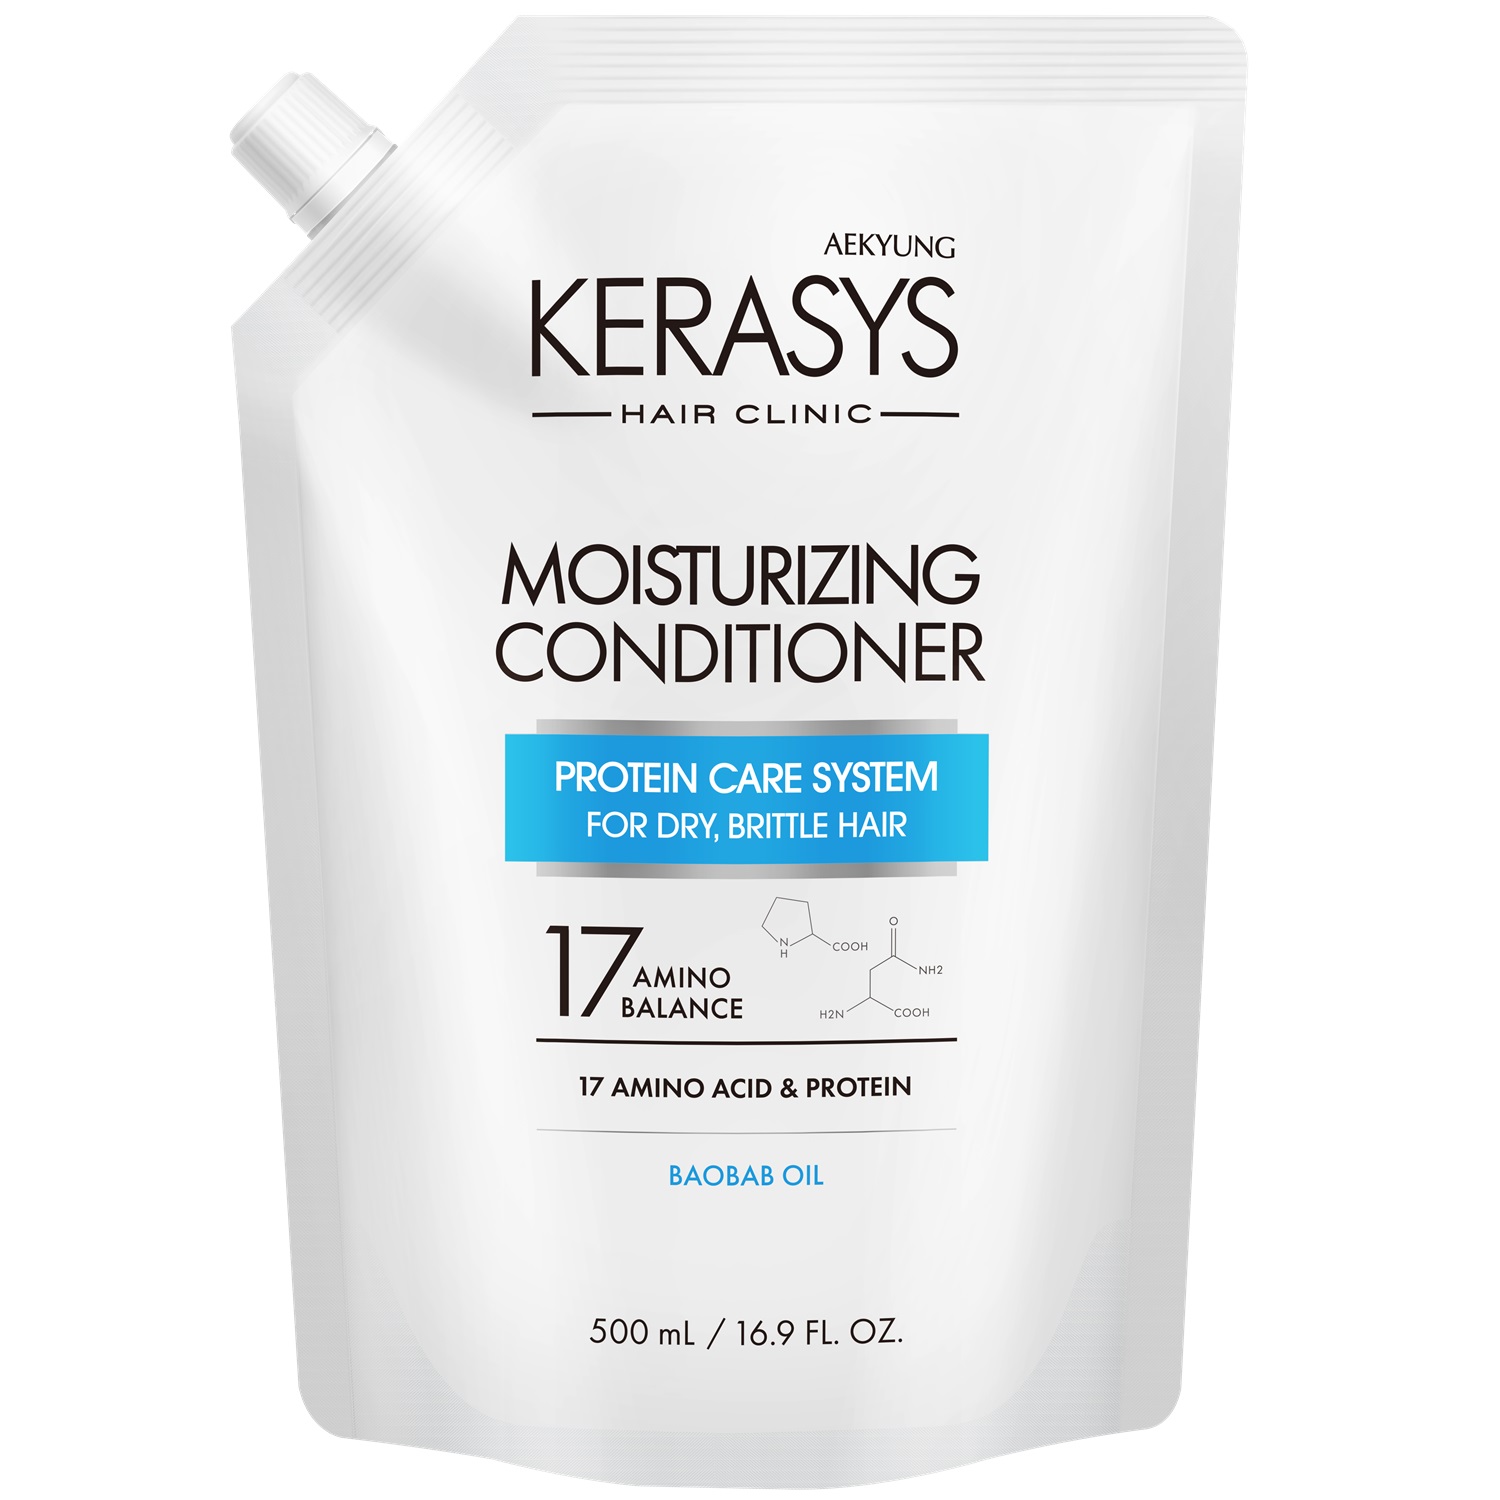 Kerasys Кондиционер увлажняющий для сухих, вьющихся волос, запасной блок 500 мл (Kerasys, Hair Clinic)